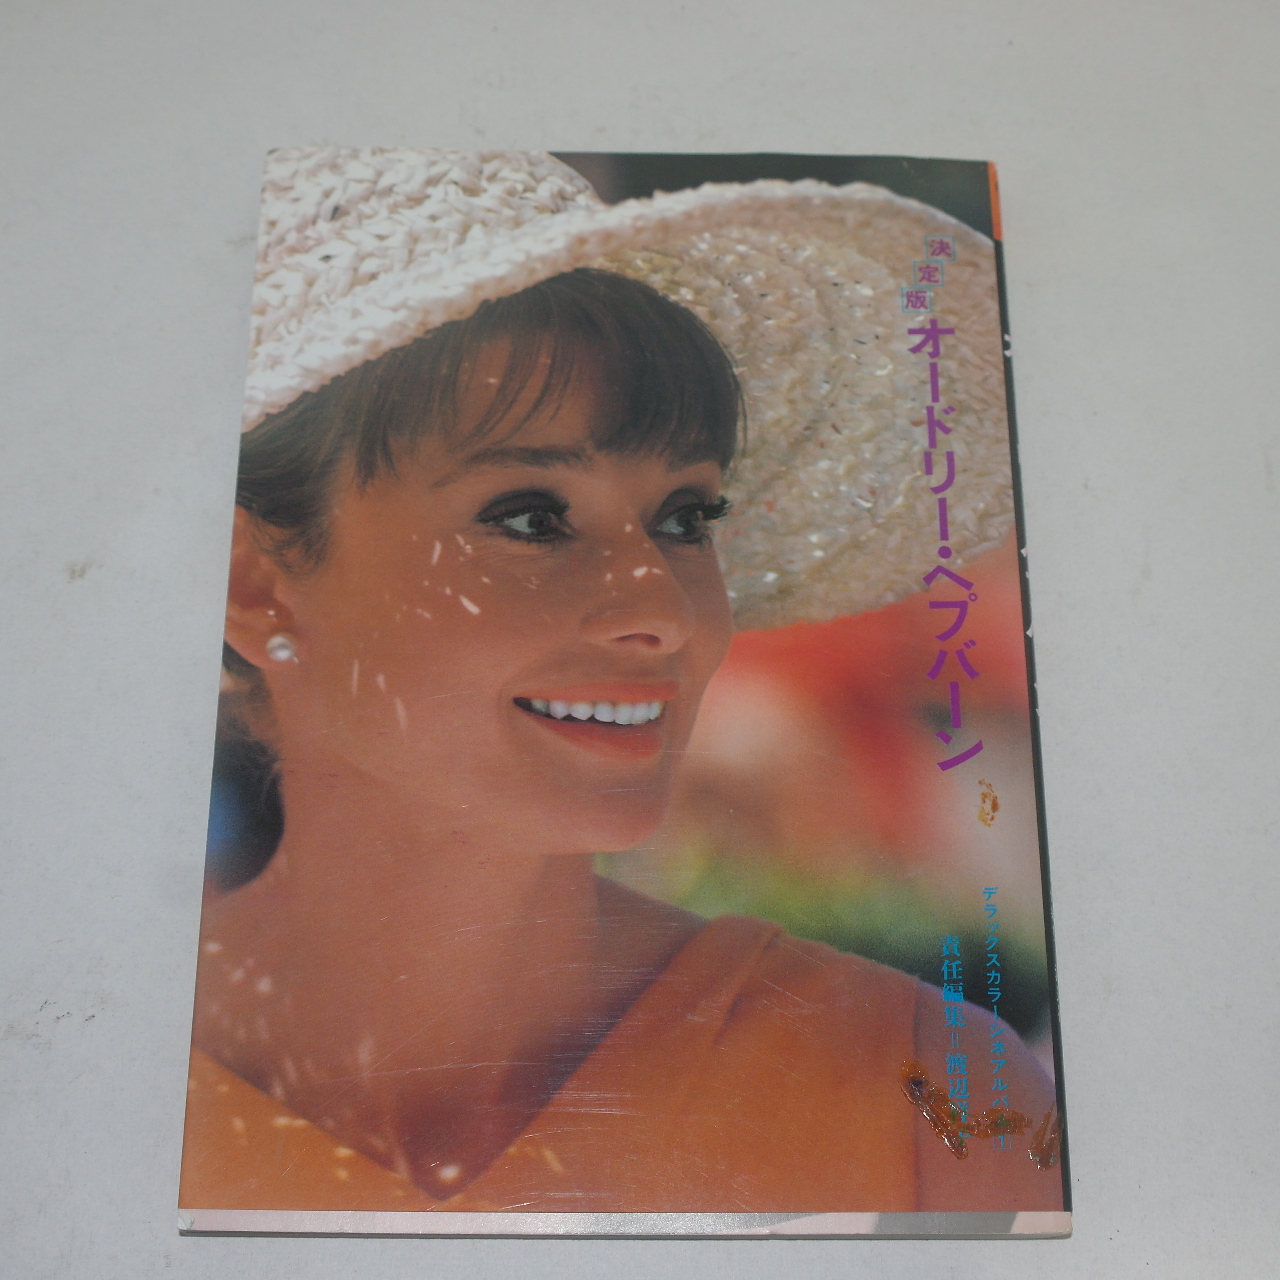 1993년 오드리햅번(Audrey Hepburn) 칼라화보집 결정판 1책